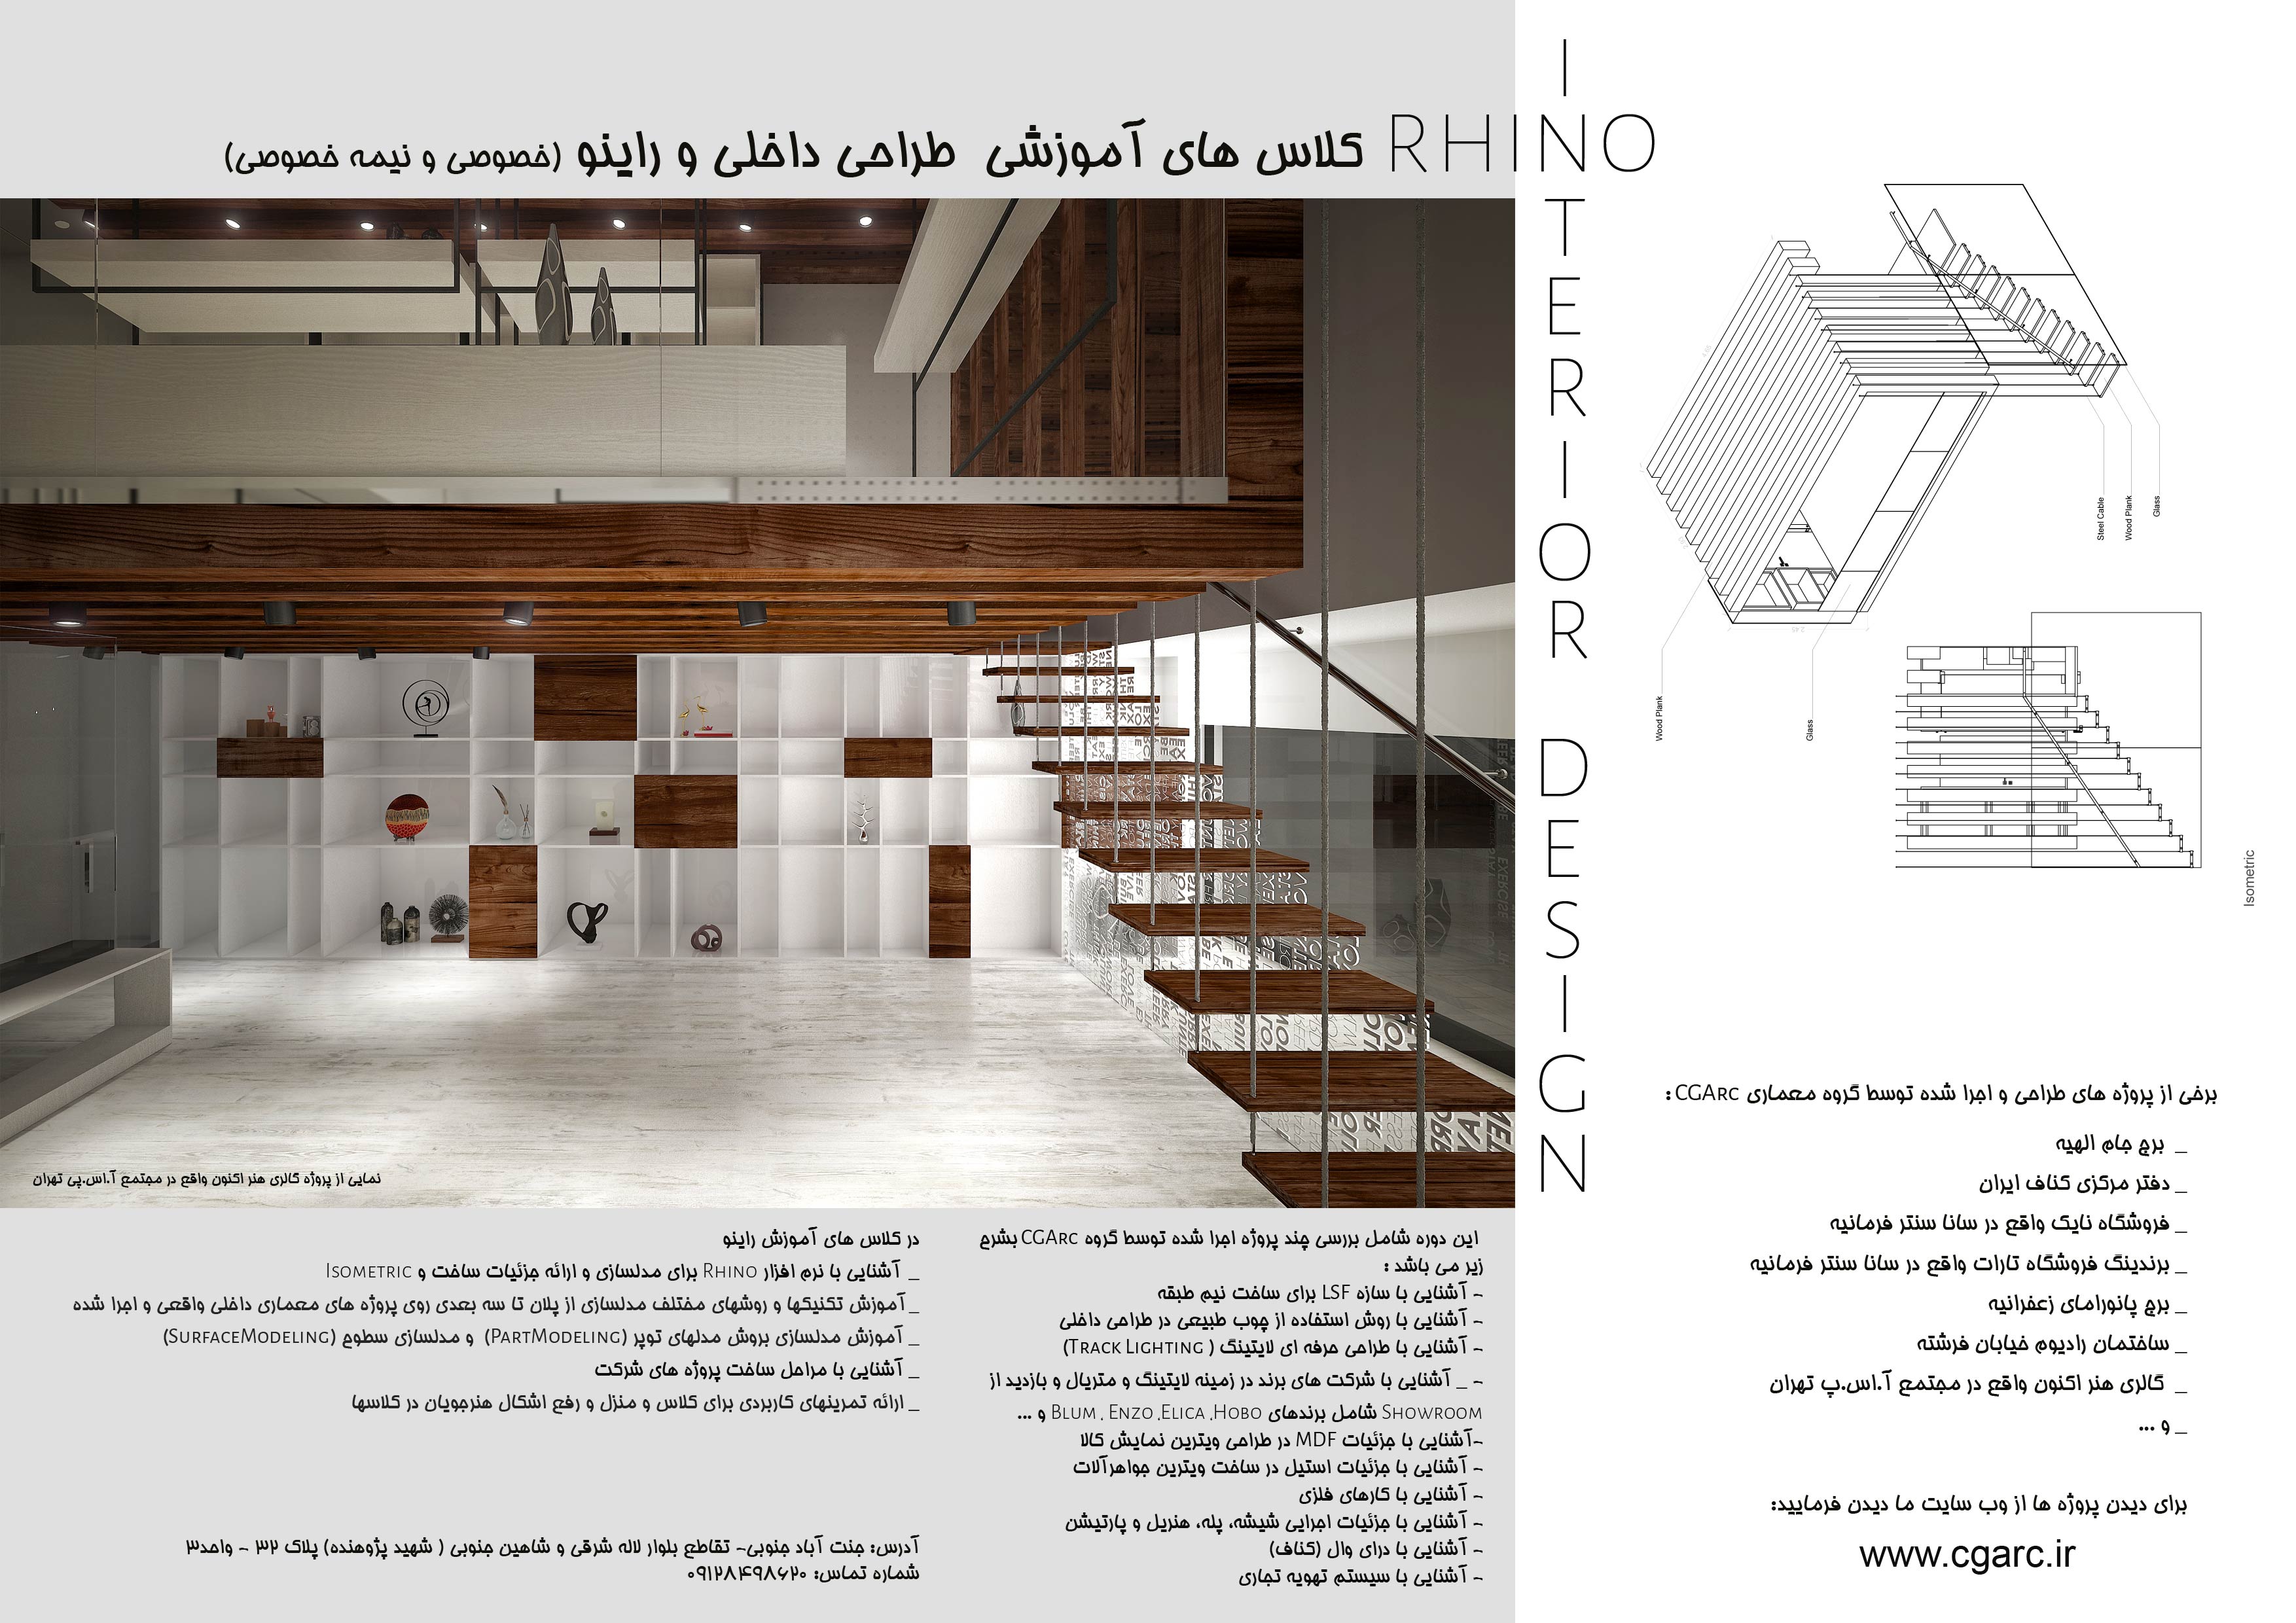 آموزش راینو و طراحی داخلی برای معماران (خصوصی و نیمه خصوصی)